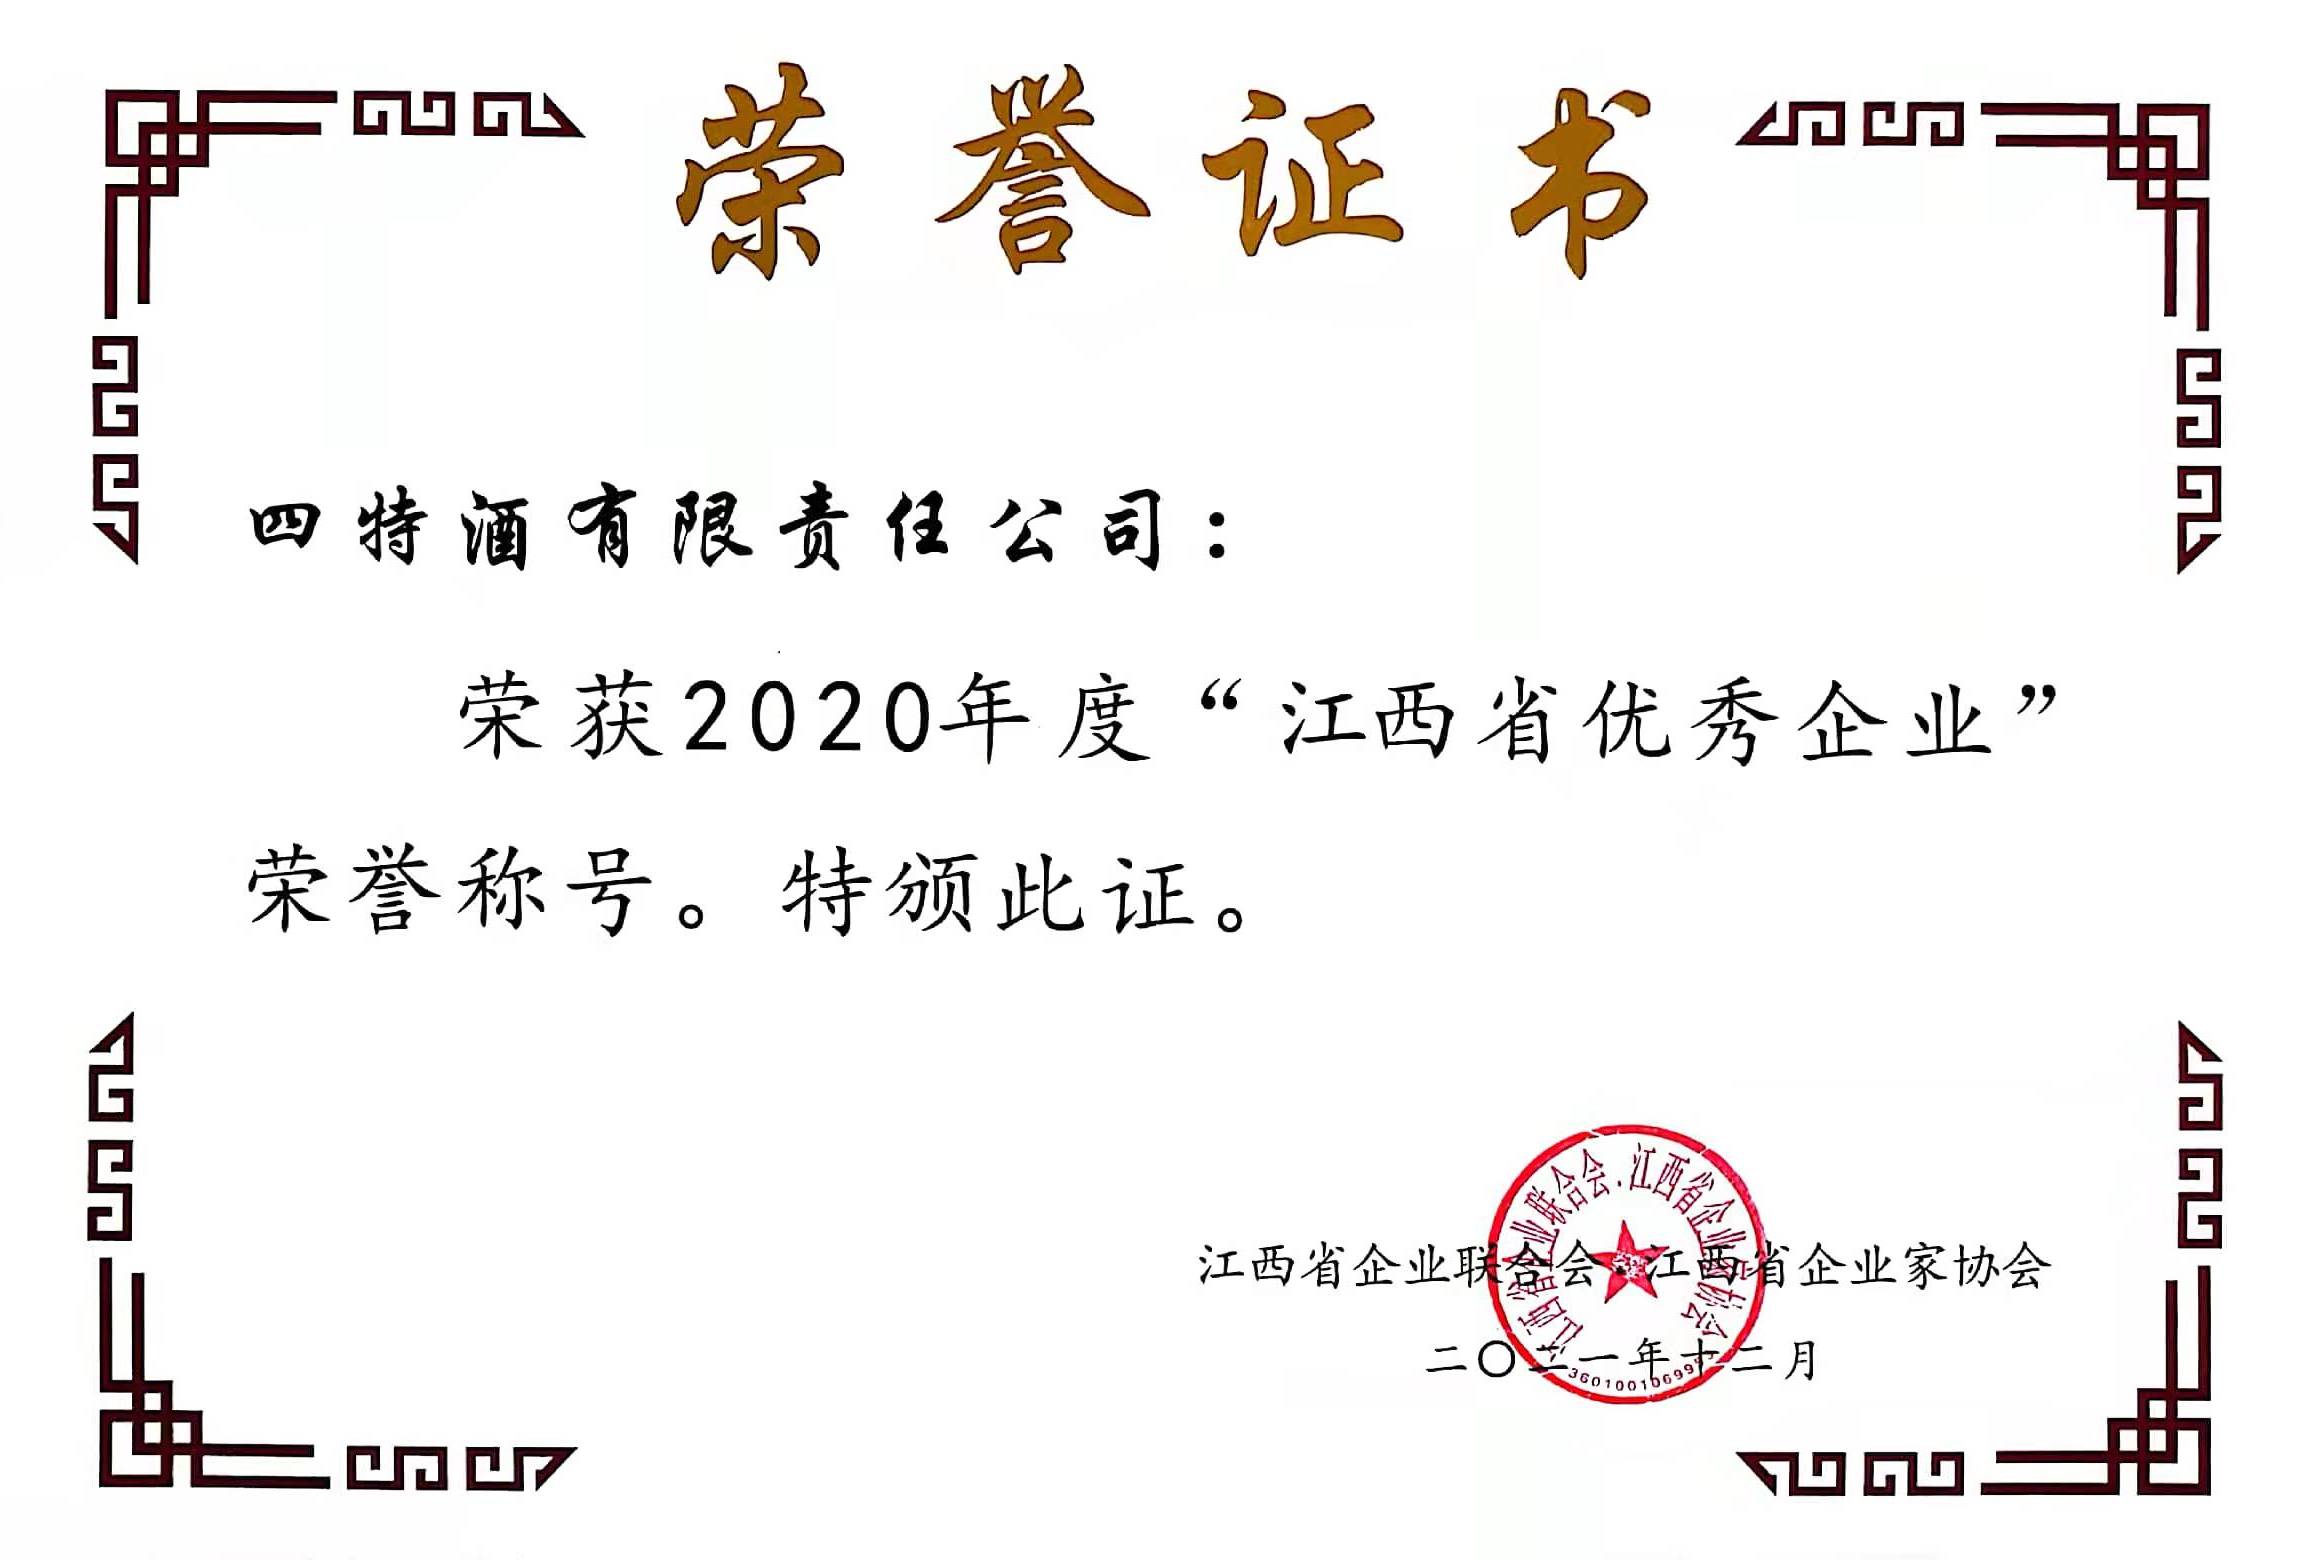 2020年度“yobo体育
省优秀企业”荣誉称号